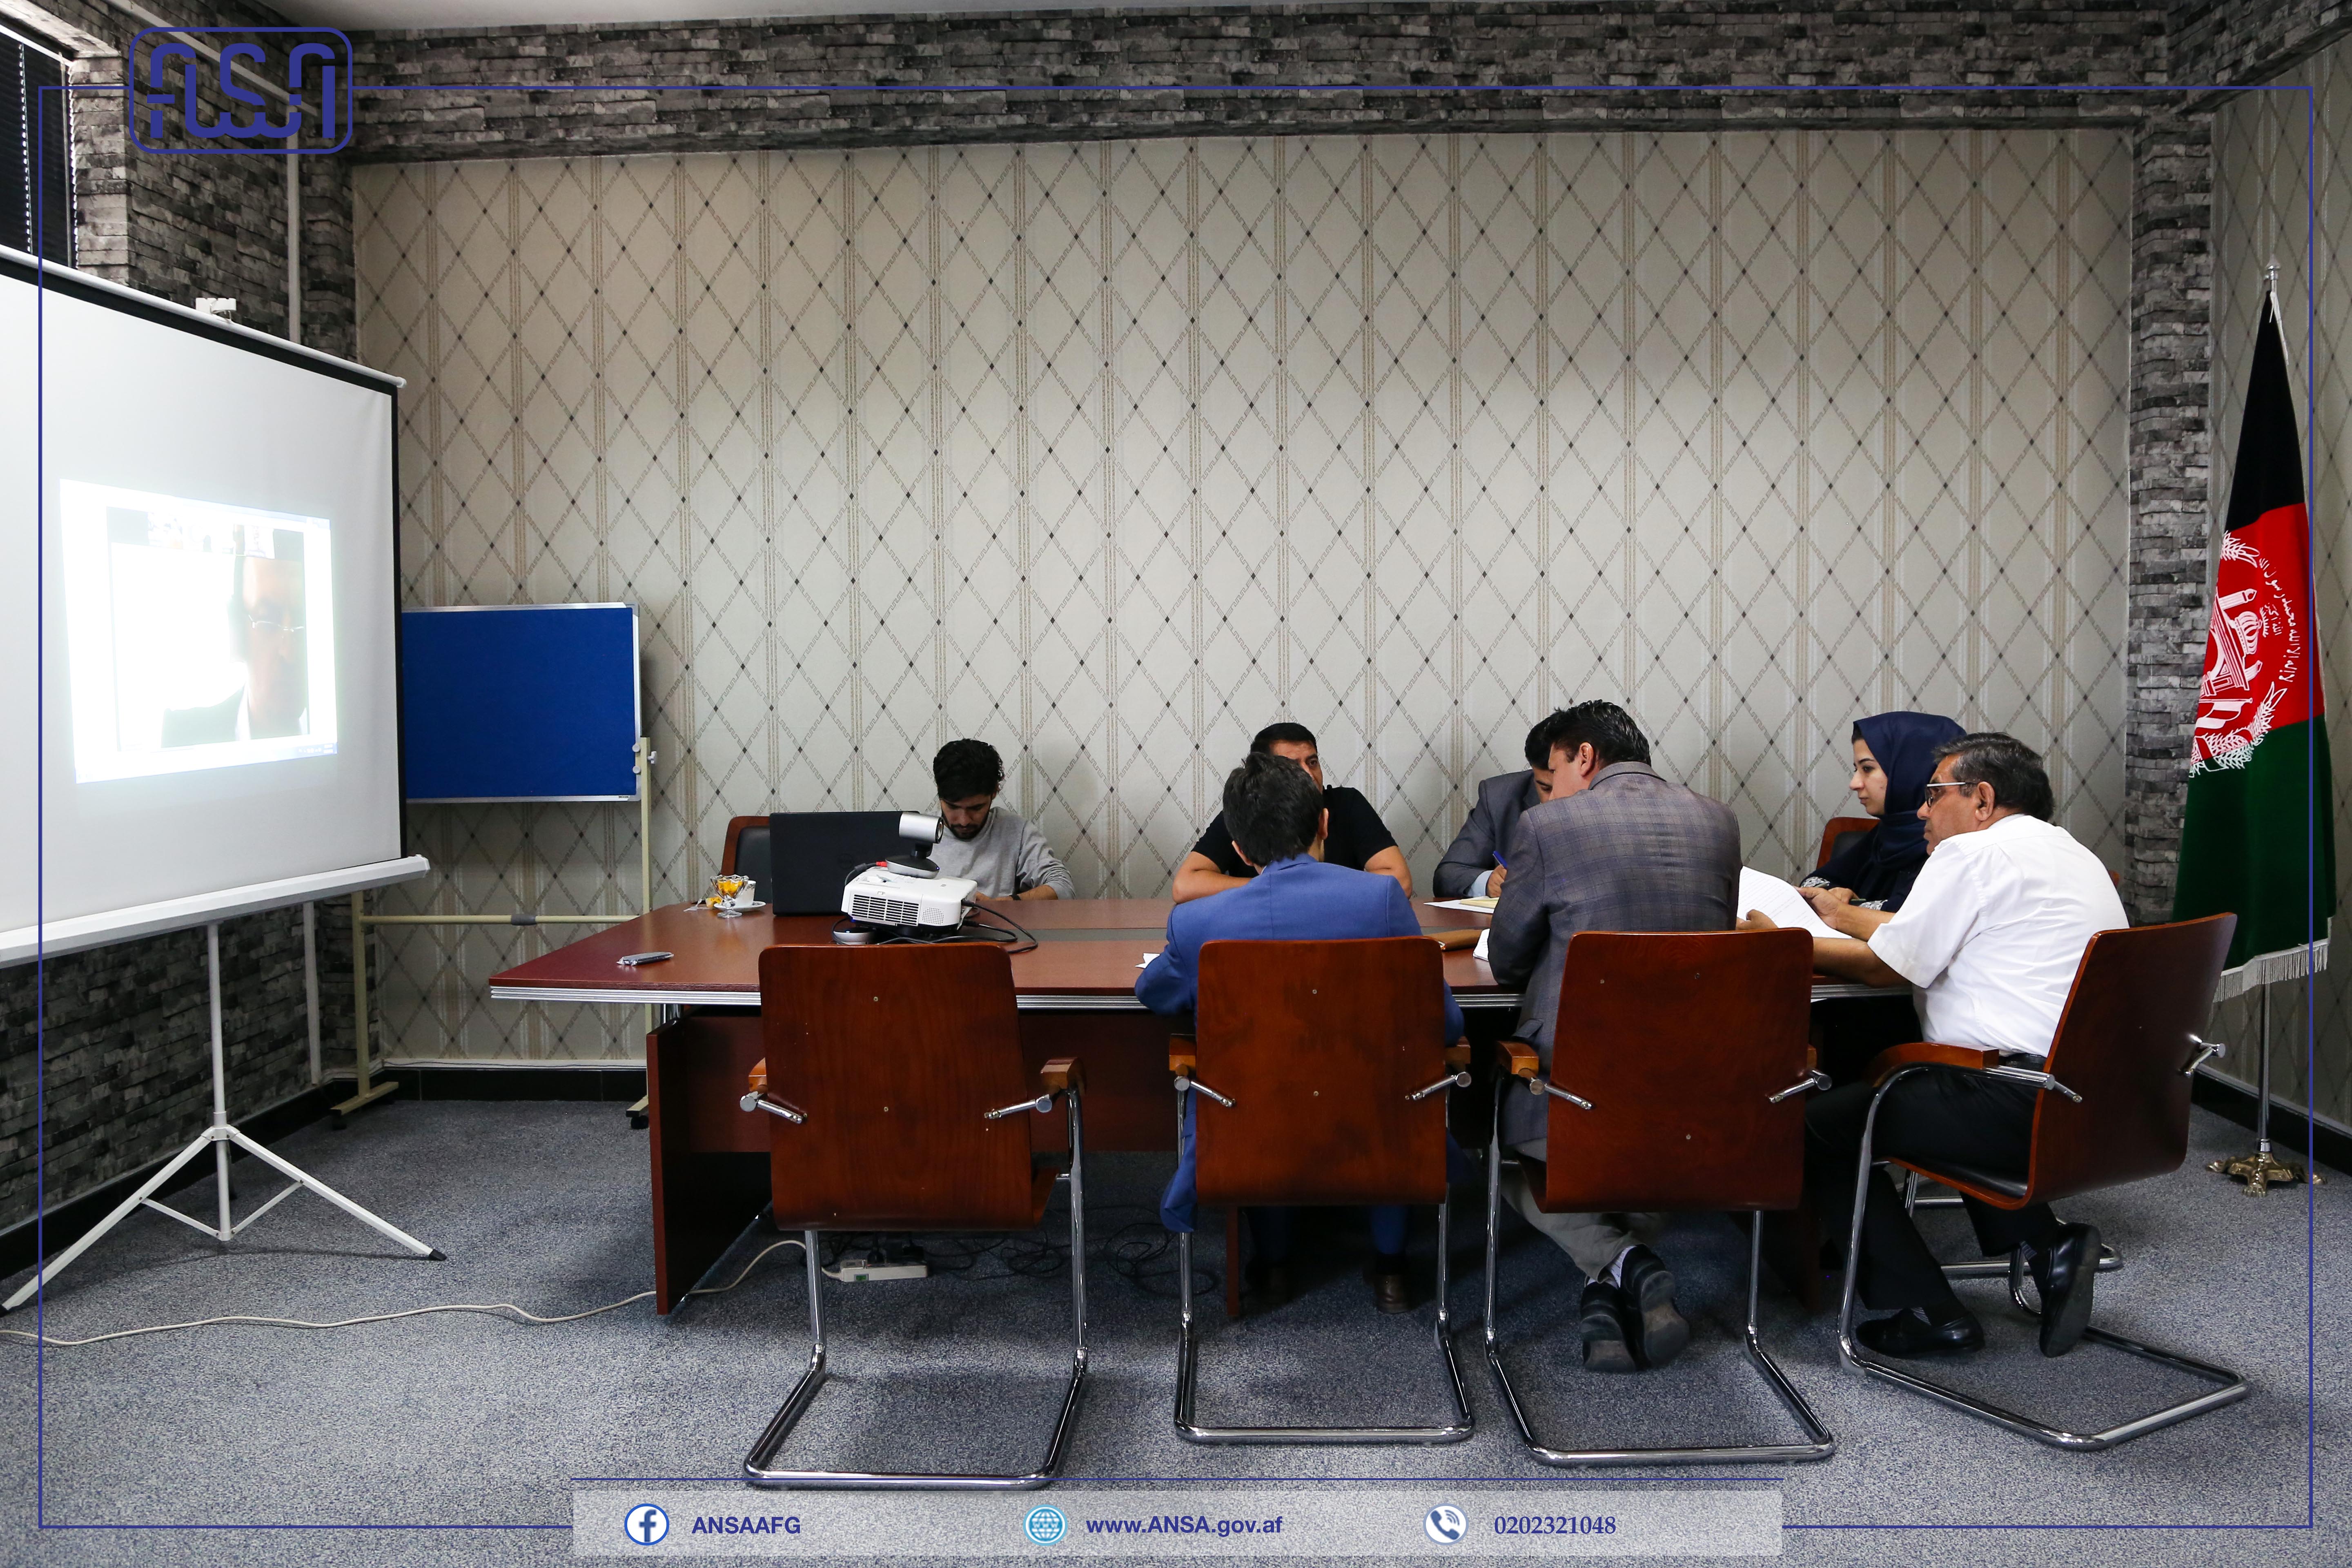 نشست میان اداره ملی ستندرد افغانستان و آژانس ستندرد و مترولوژی اوزبیکستان به شکل آنلاین برگزار شد.